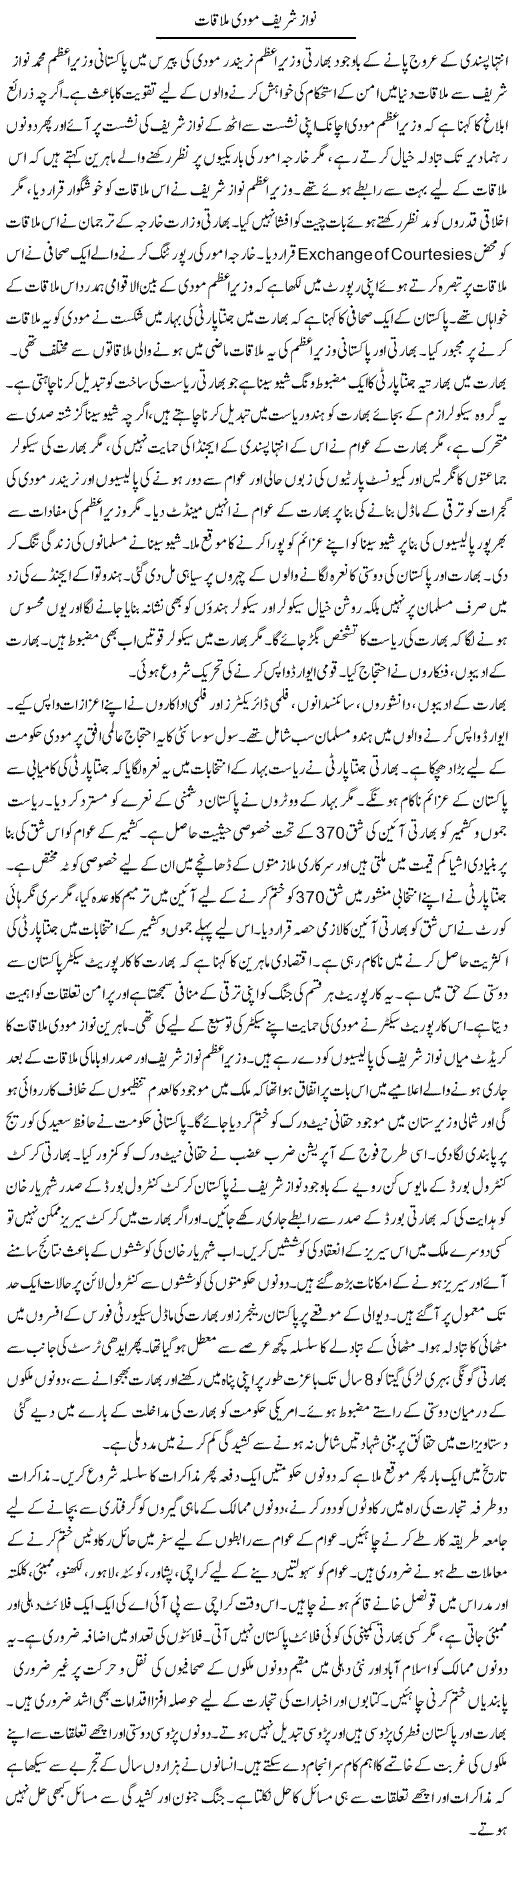 Nawaz shareef modi mulaqaat | Tausif Ahmad Khan | Daily Urdu Columns